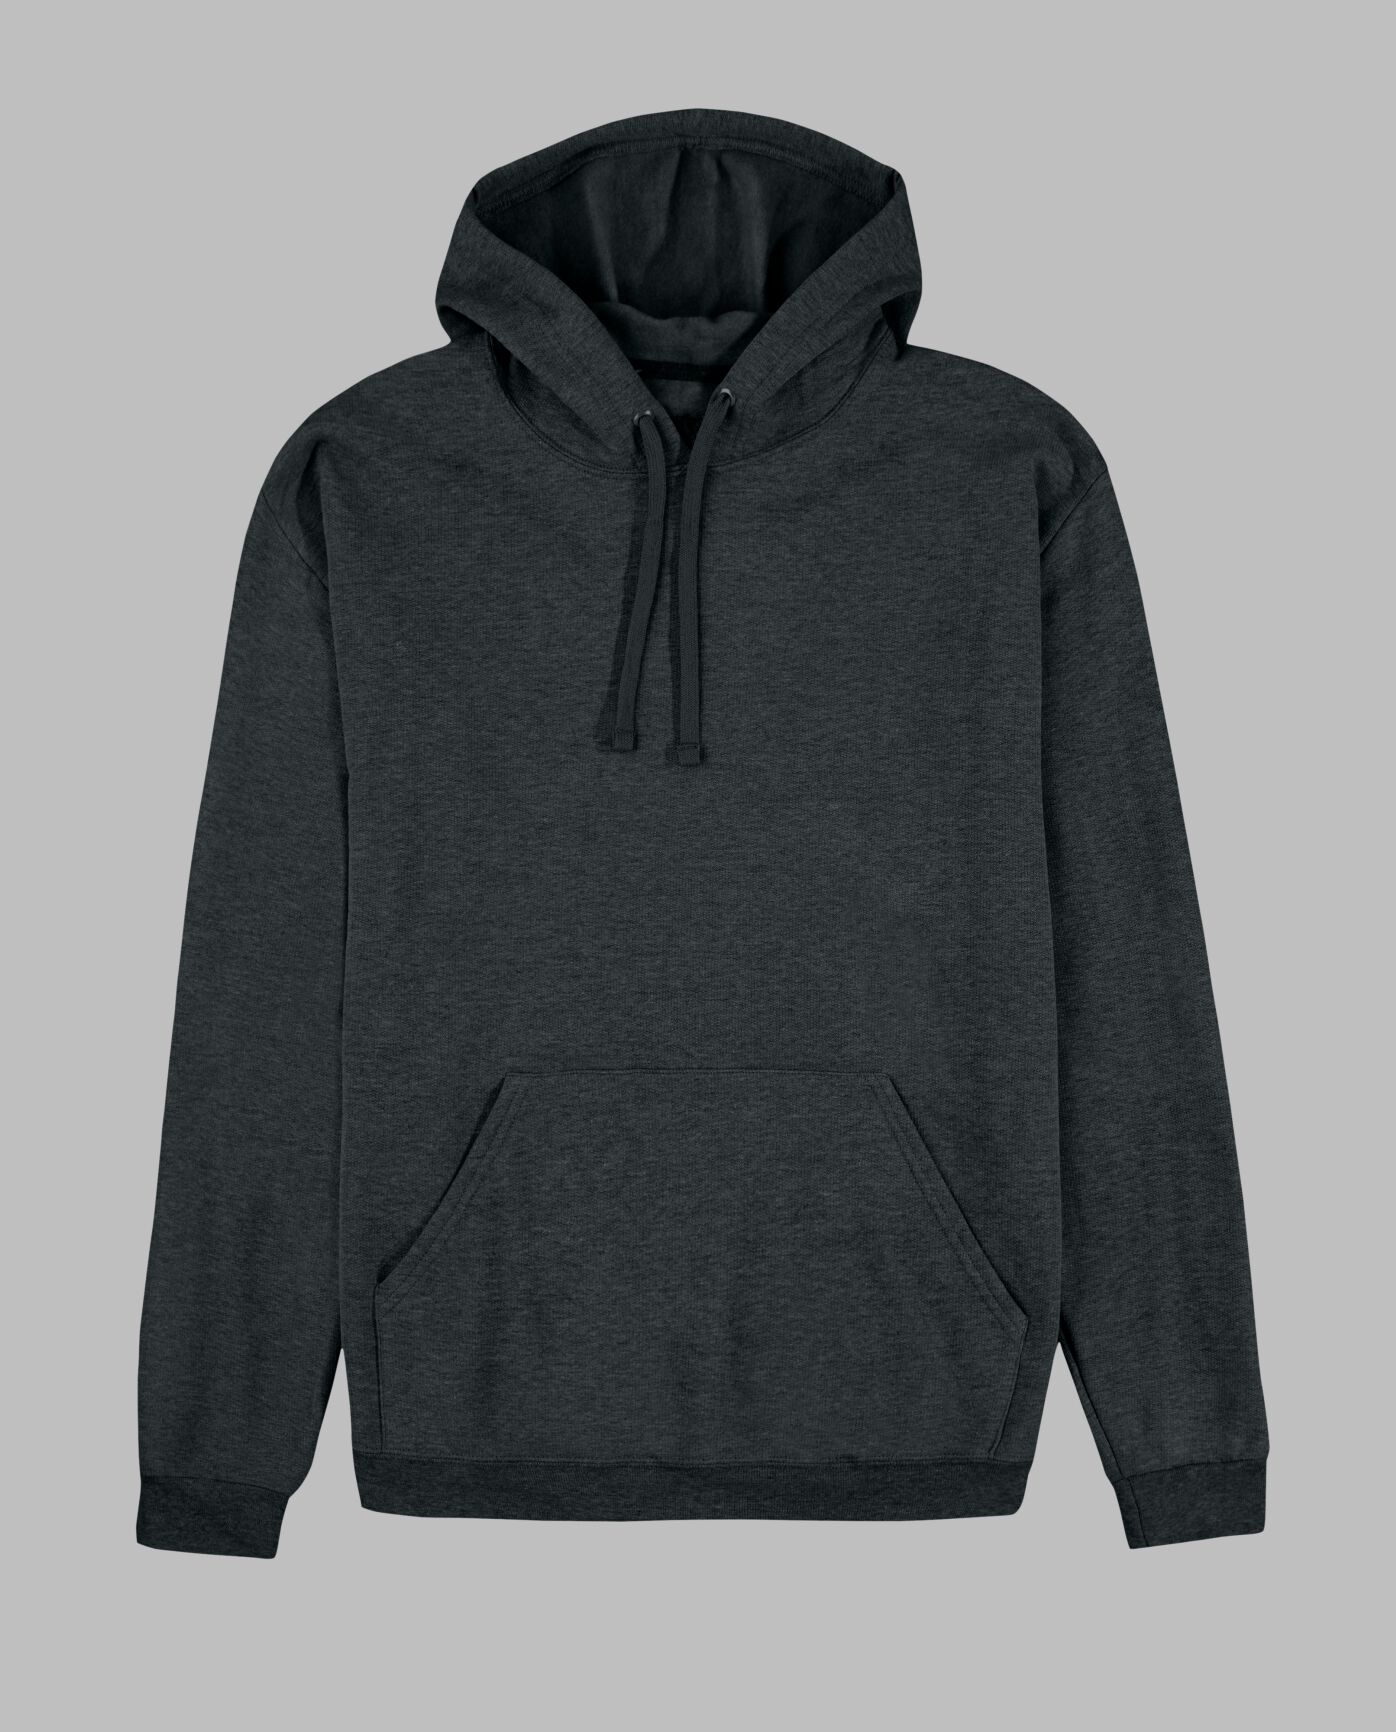 motief scheidsrechter Traditie Men's EverSoft Fleece Pullover Hoodie Sweatshirt, 1 Pack